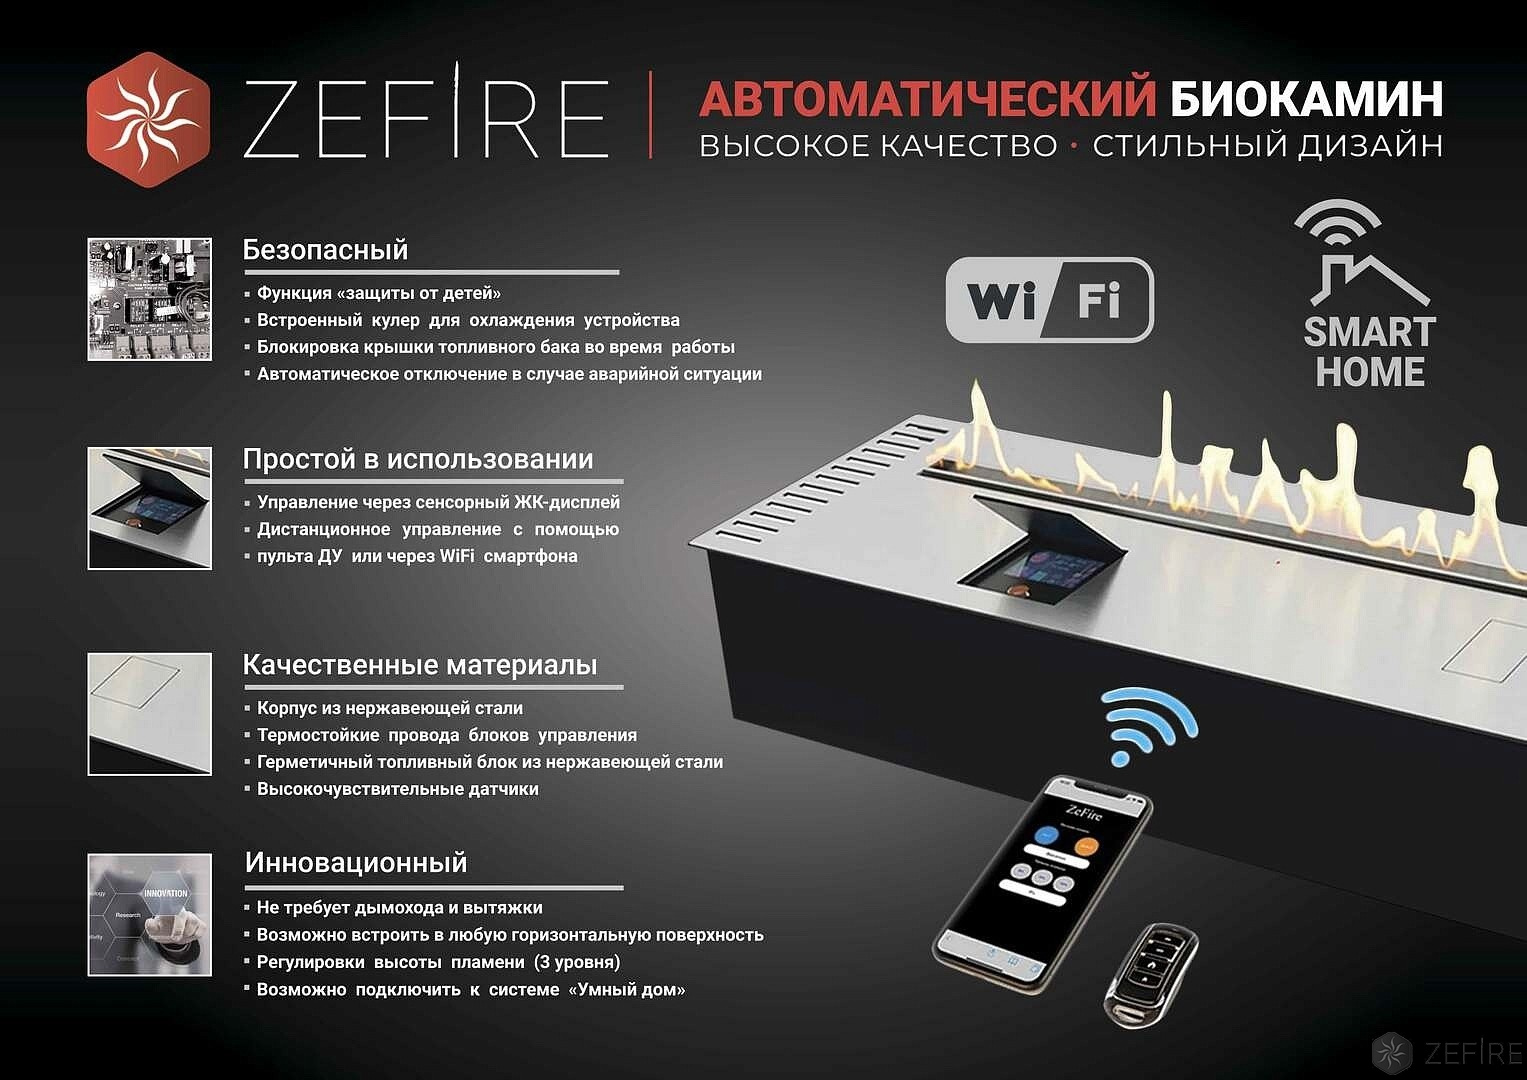 Автоматический биокамин ZeFire Automatic 1200 с ДУ